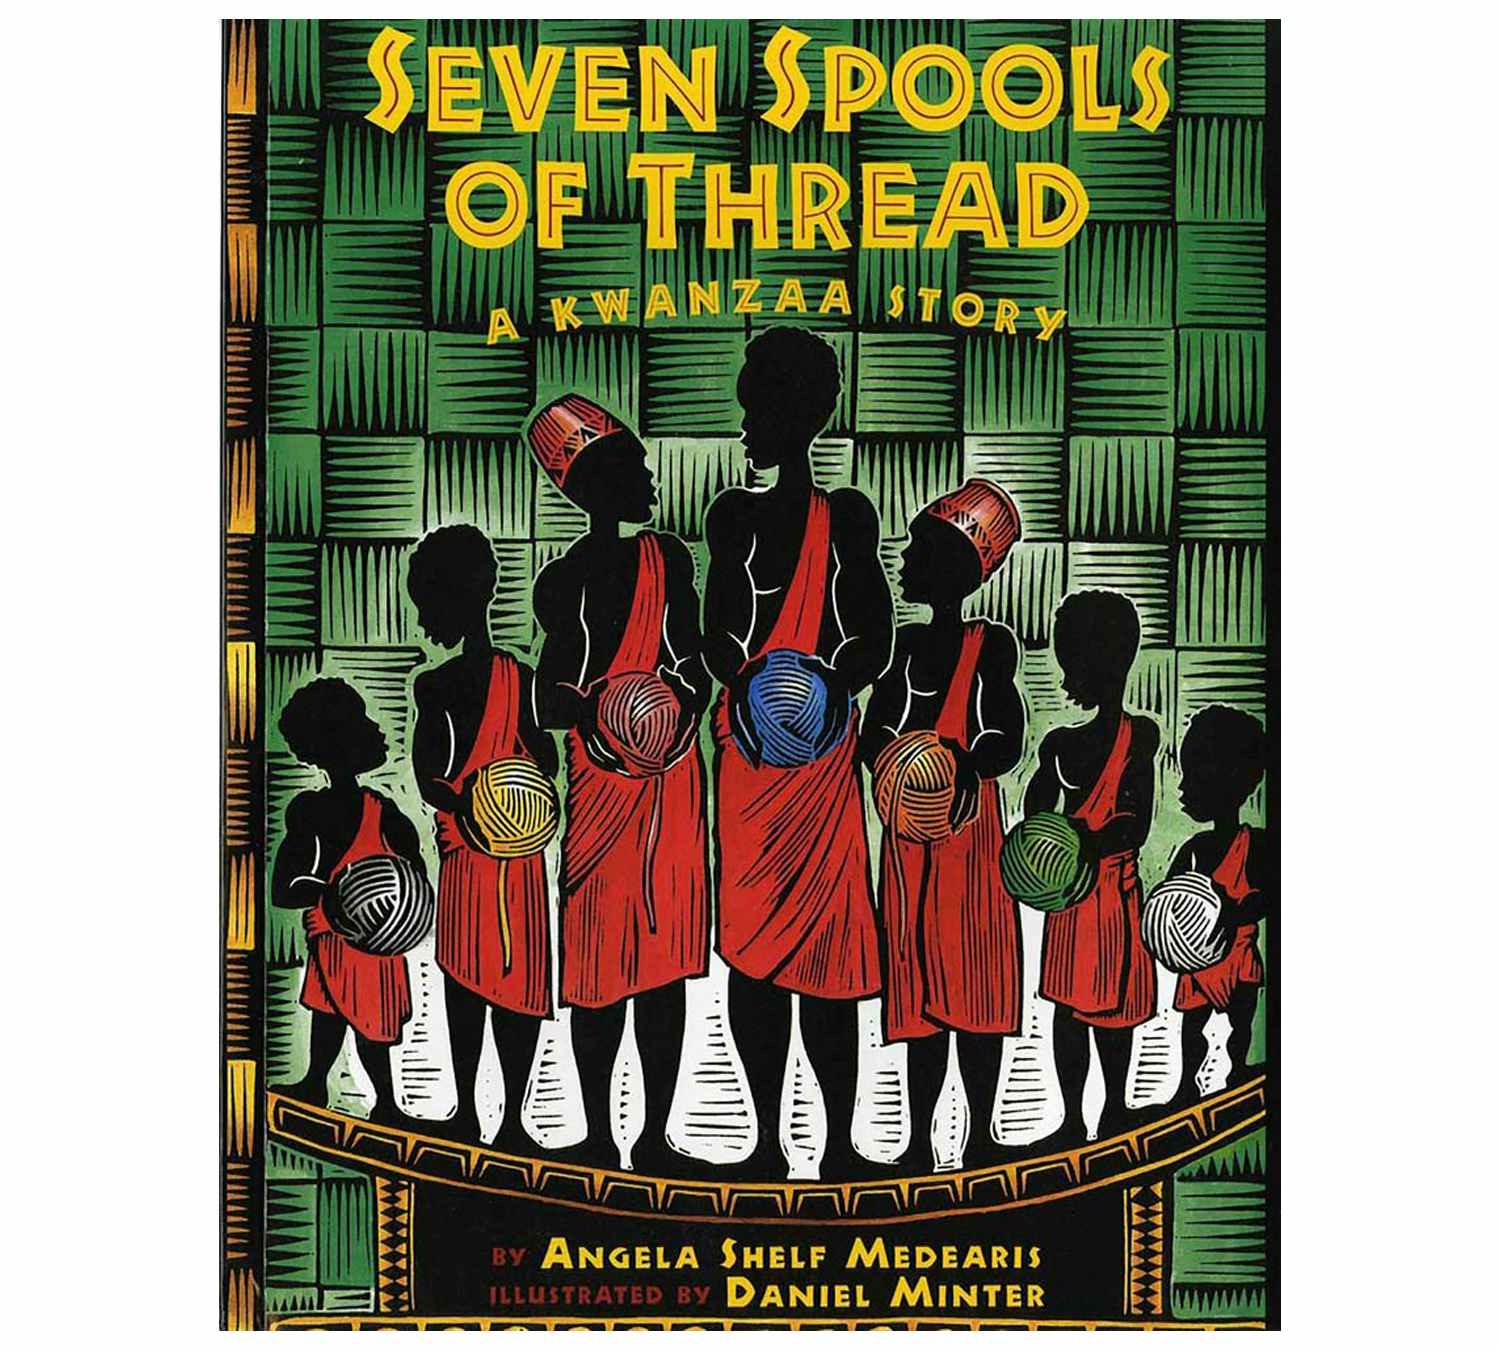 best kwanzaa gifts - Seven Spools of Thread a Kwanzaa story book